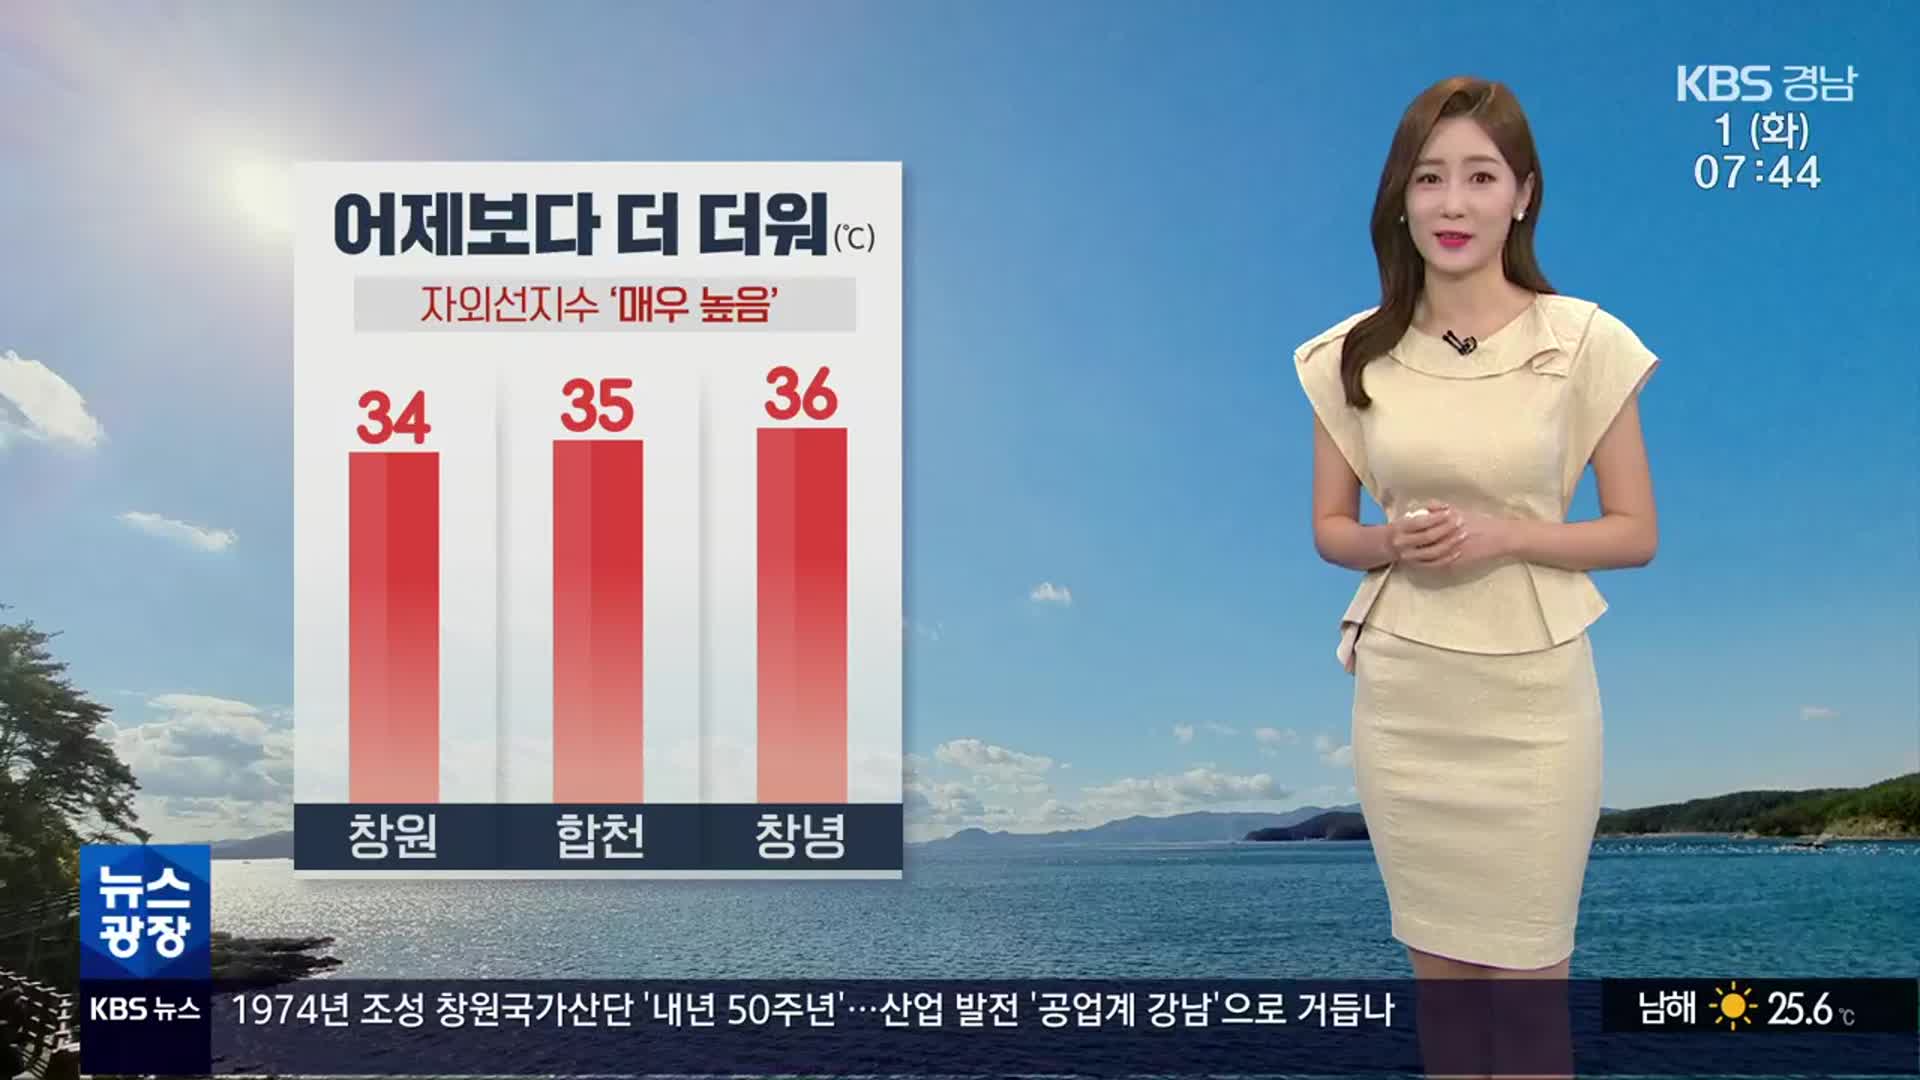 [날씨] 경남 어제보다 더 더워…대부분 폭염 경보 발효 중